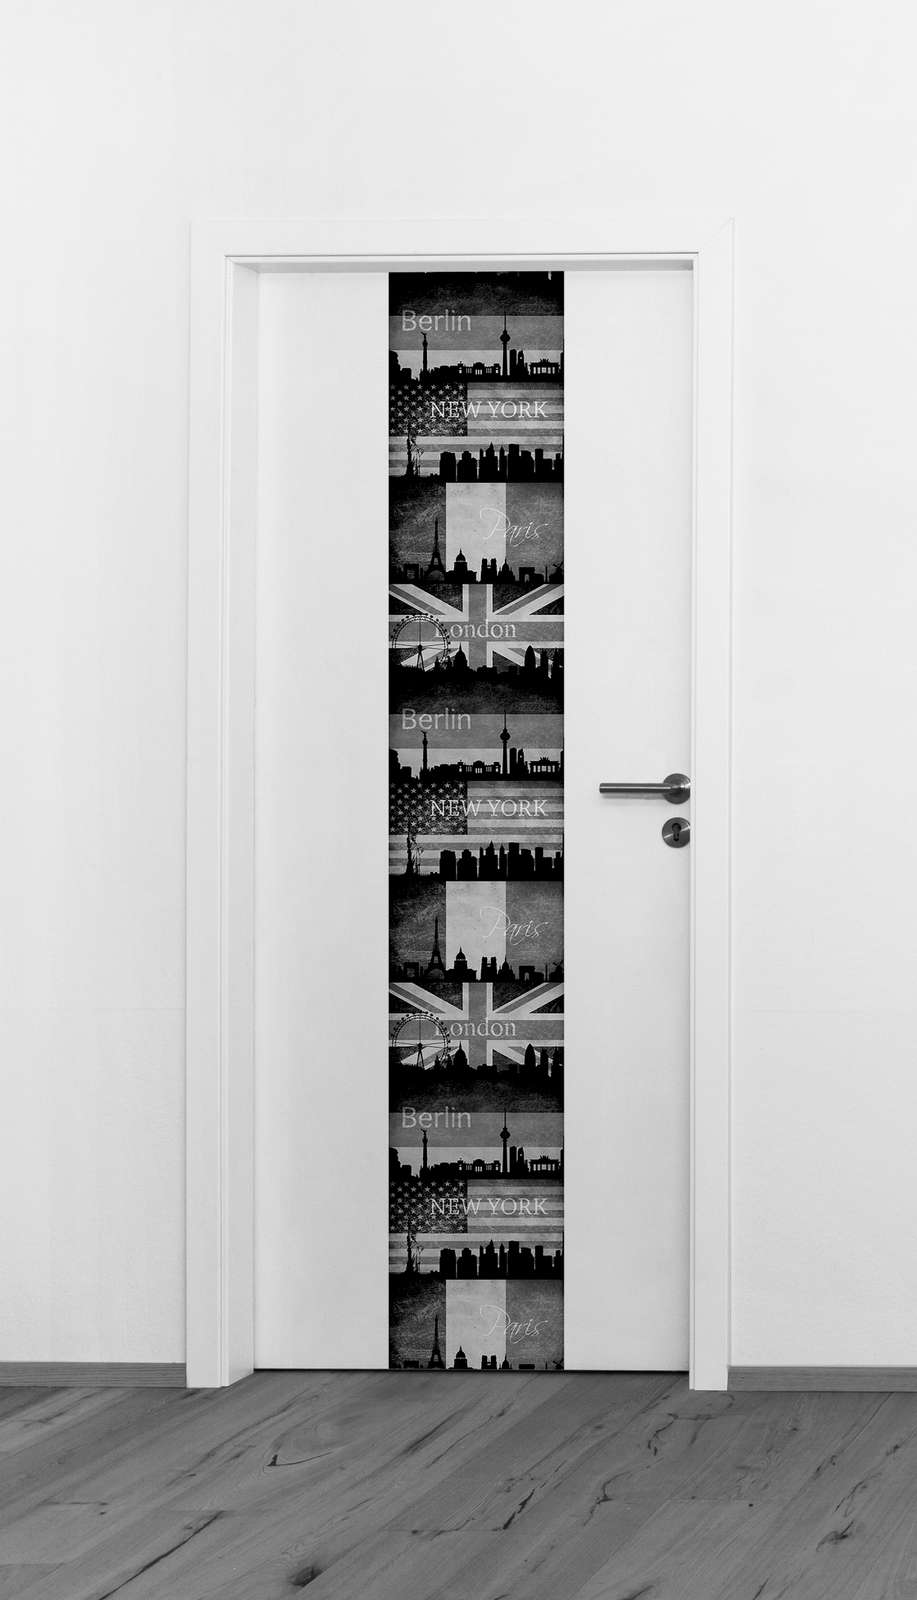             Behangpaneel Londen, New York & Parijs in retro look - zwart, wit
        